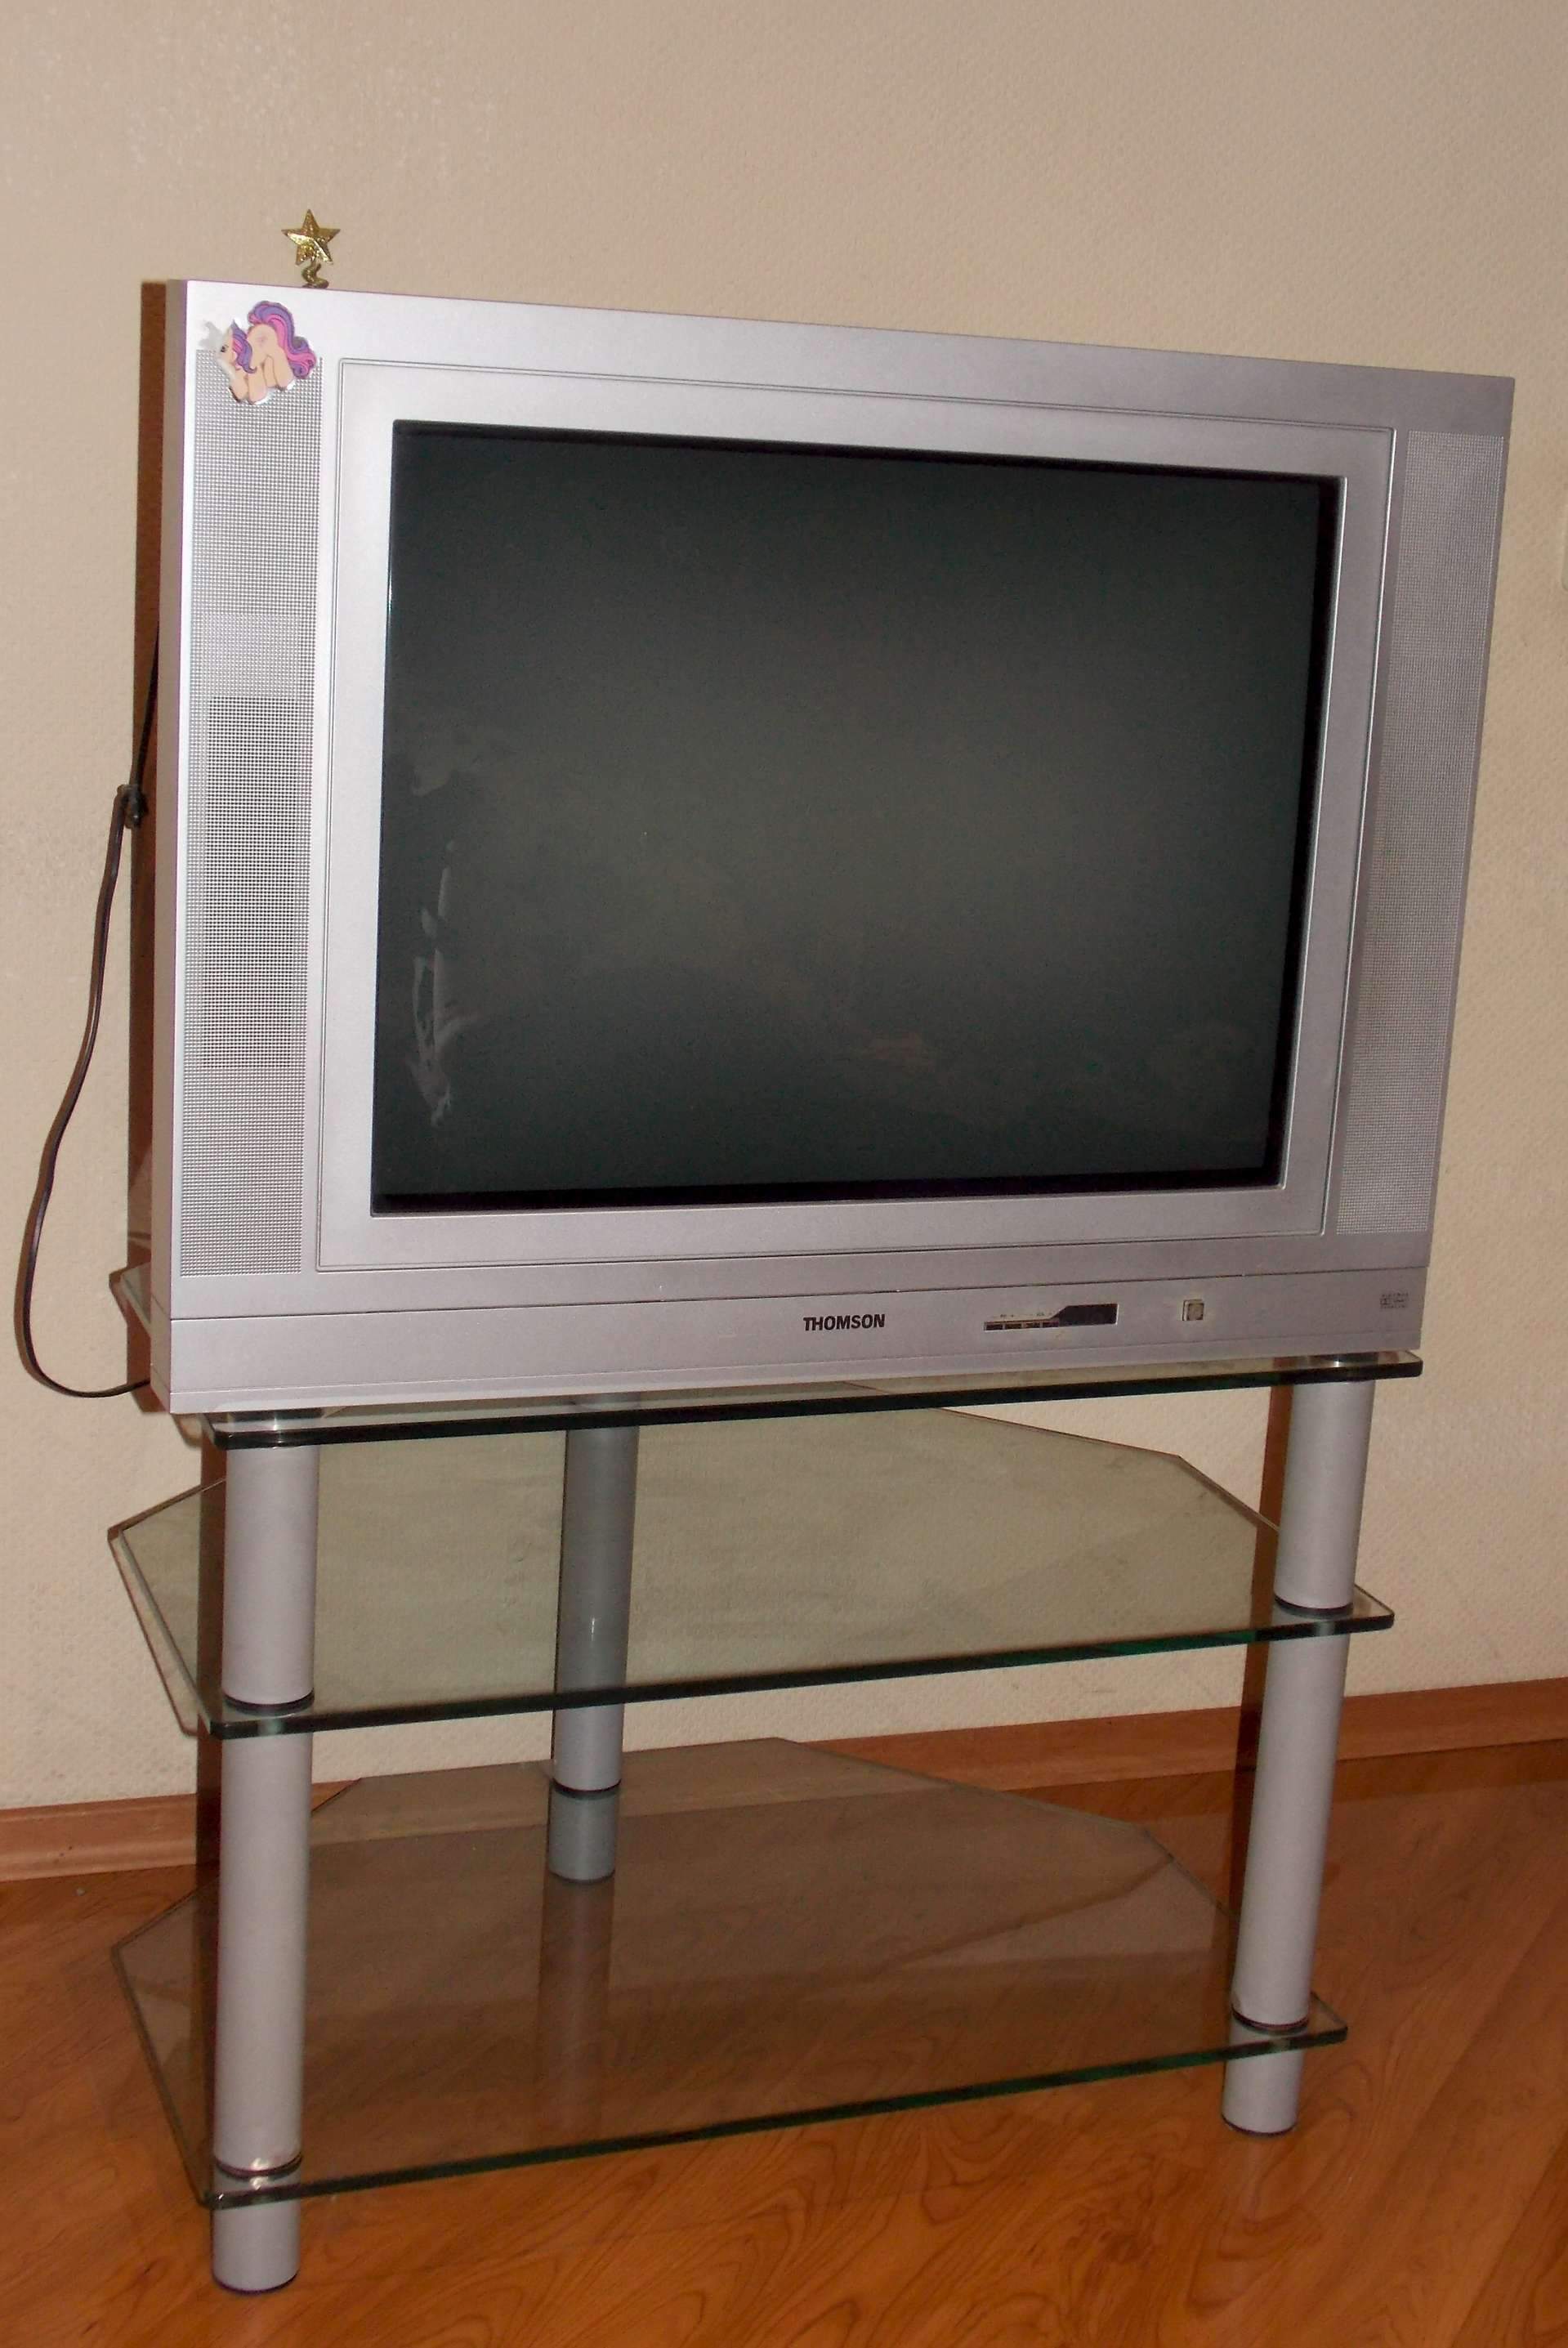 Объявления телевизоры бу. Thomson телевизор старый 21 дюйм. Телевизор Thomson 72 диагональ. Диагональ Томпсон телевизор 80. Ножка для телевизора Томсон диагональ 19 см.